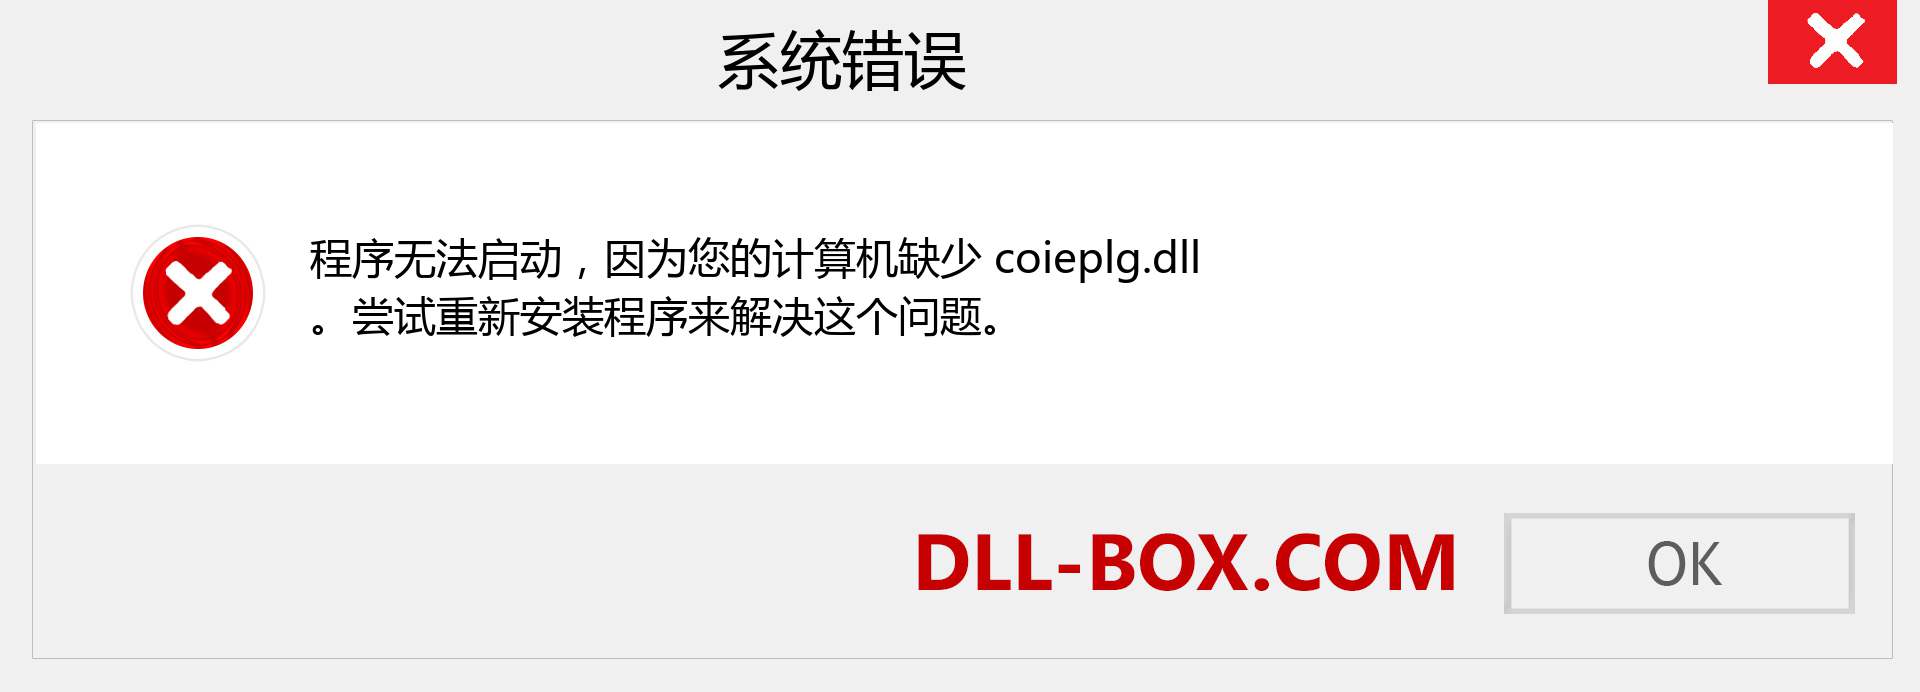 coieplg.dll 文件丢失？。 适用于 Windows 7、8、10 的下载 - 修复 Windows、照片、图像上的 coieplg dll 丢失错误